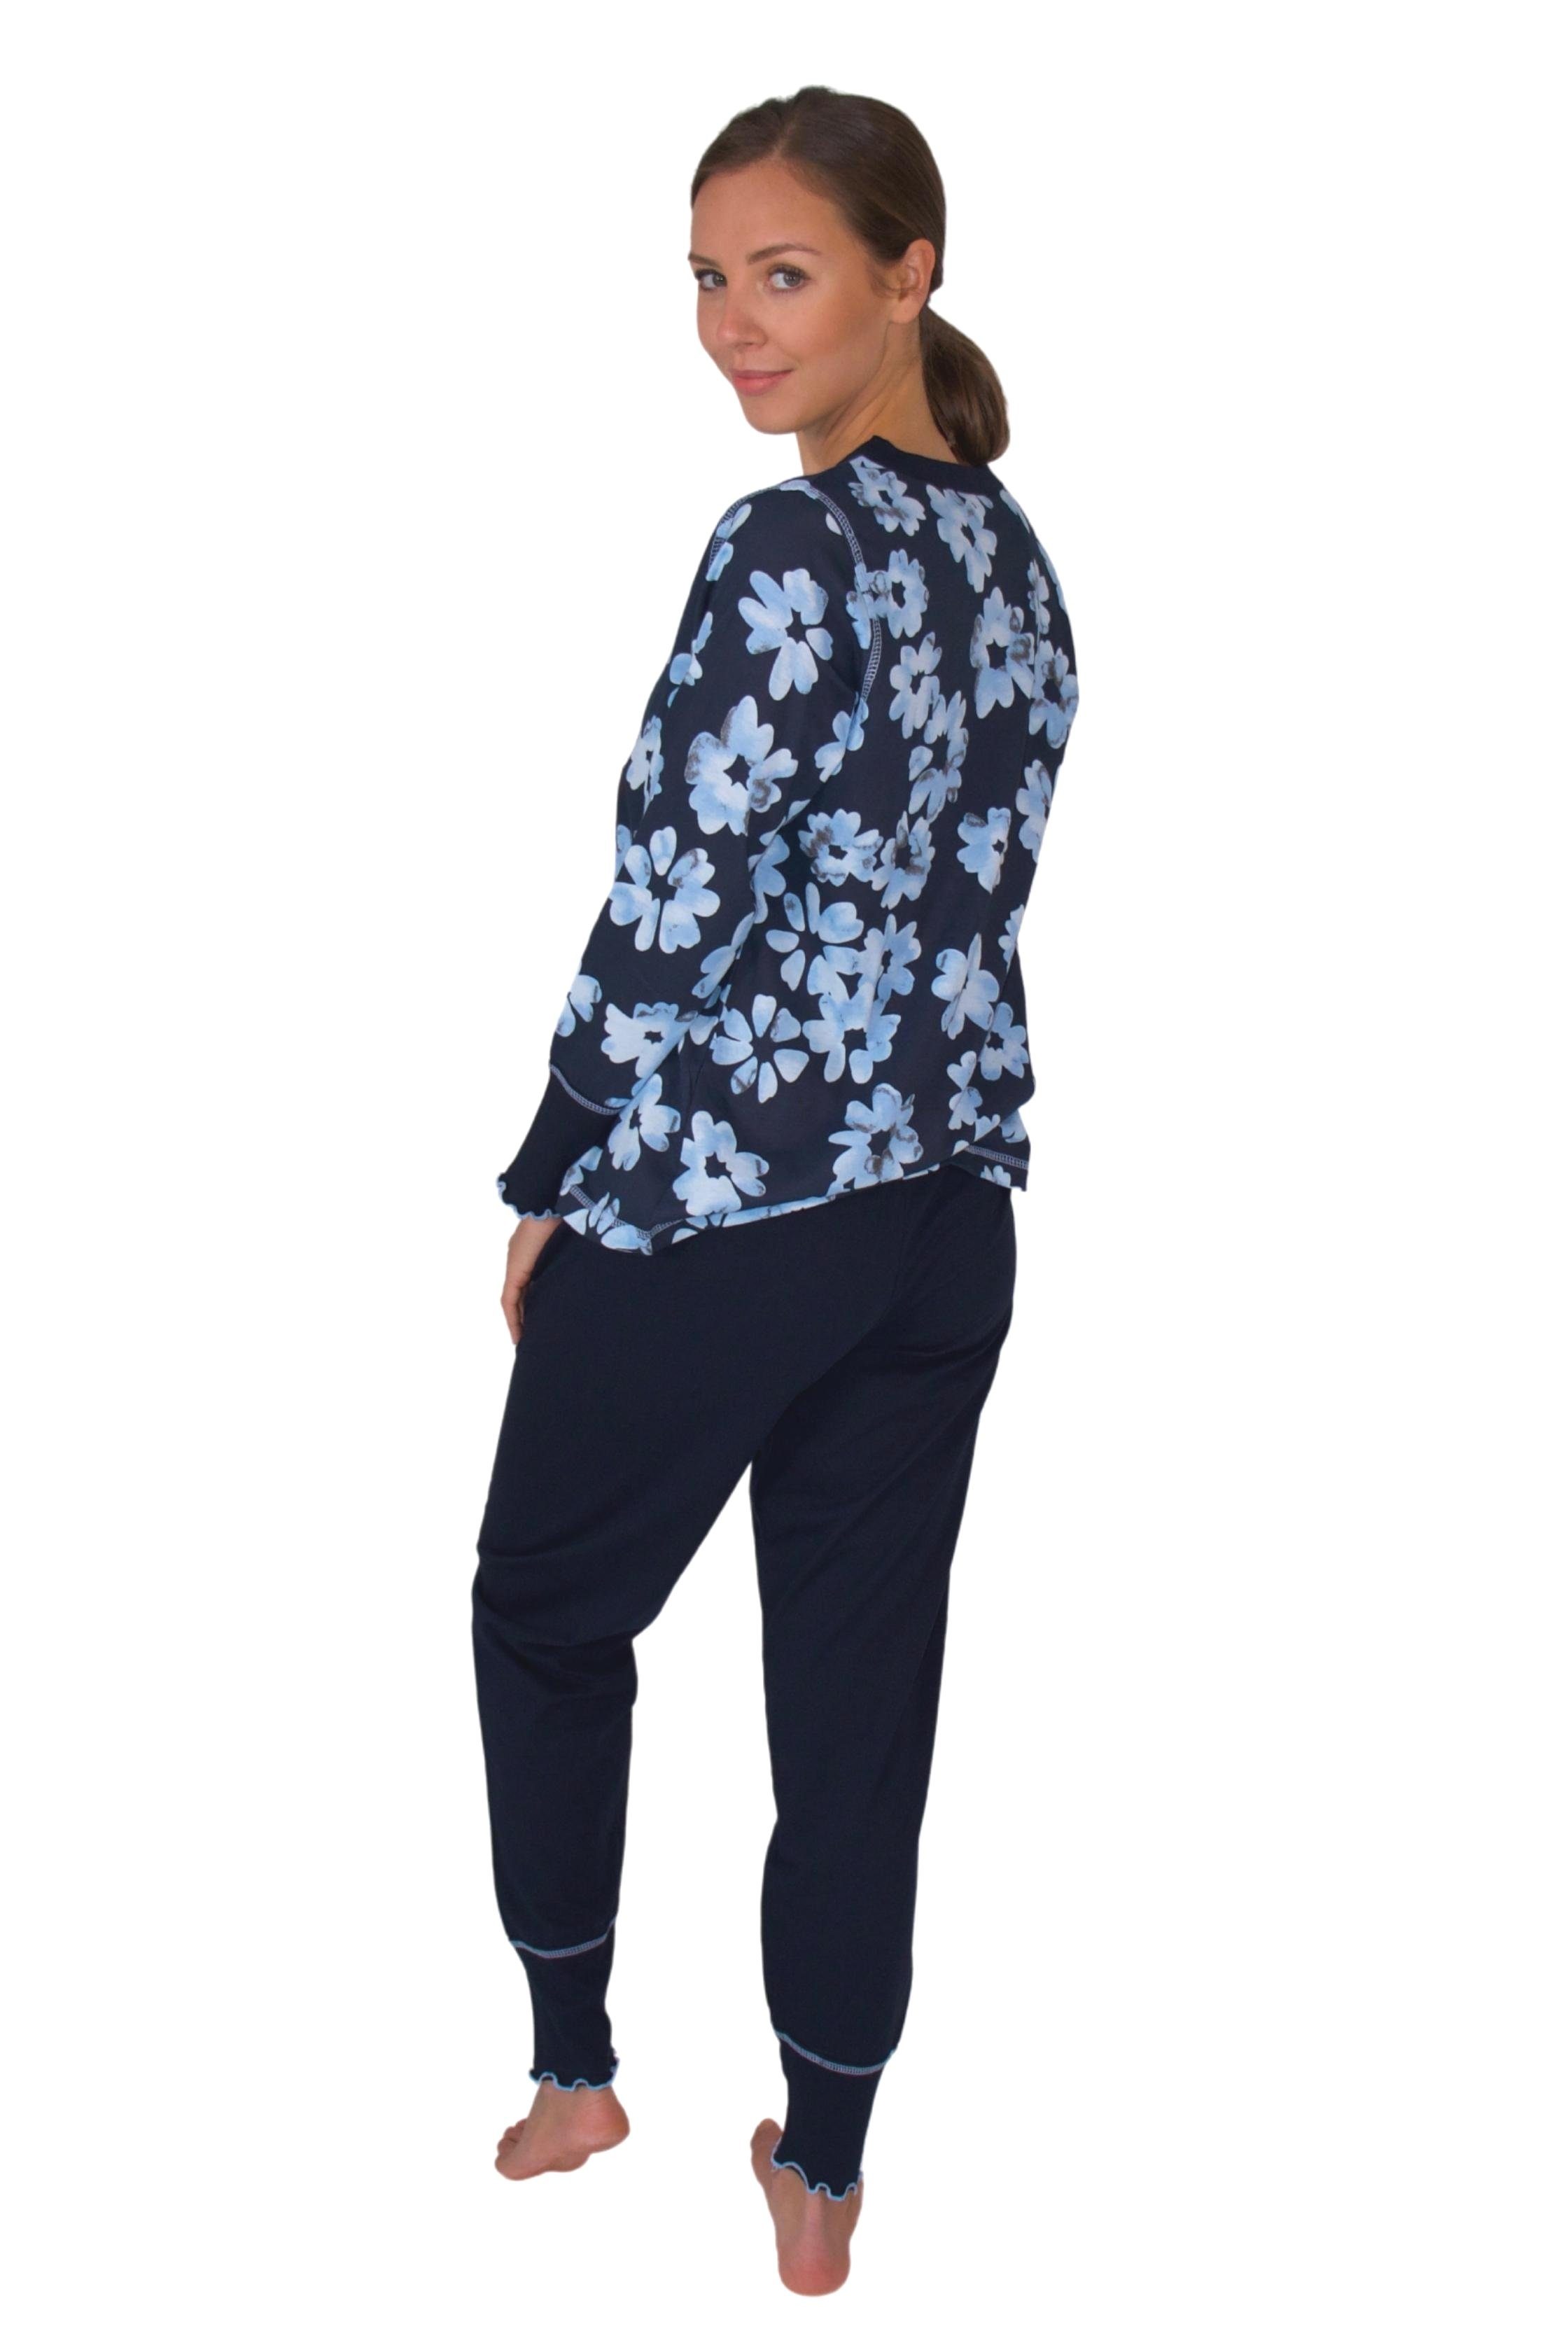 Consult-Tex Pyjama Damen weicher Qualität Baumwolle-Jersey Schlafanzug aus Pyjama DW311blau